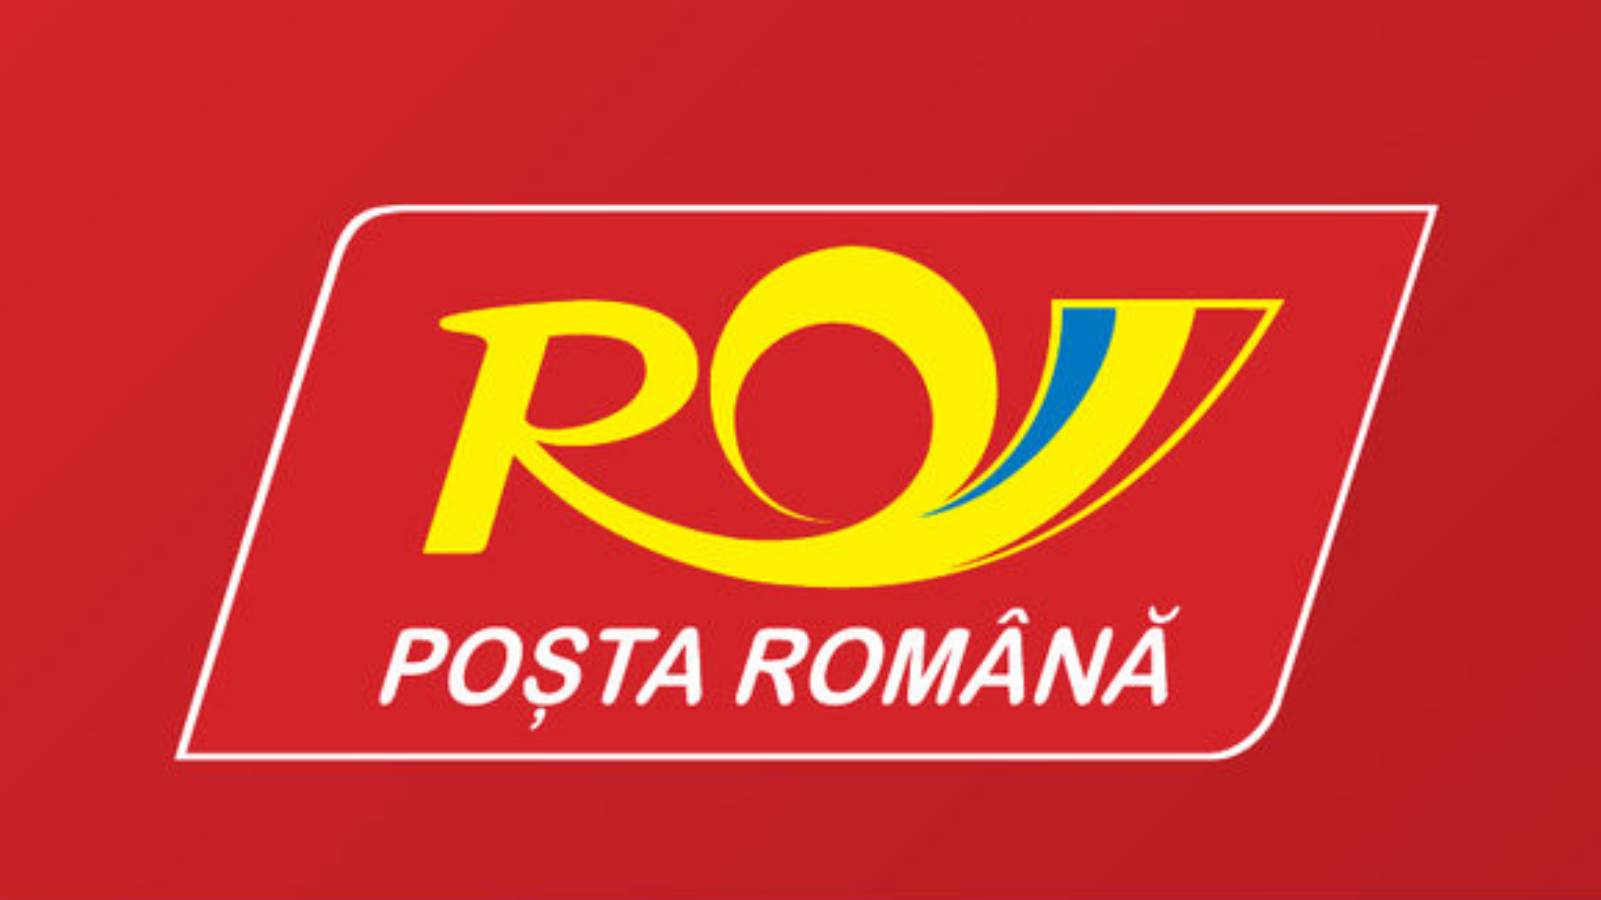 Expédition express par la poste roumaine